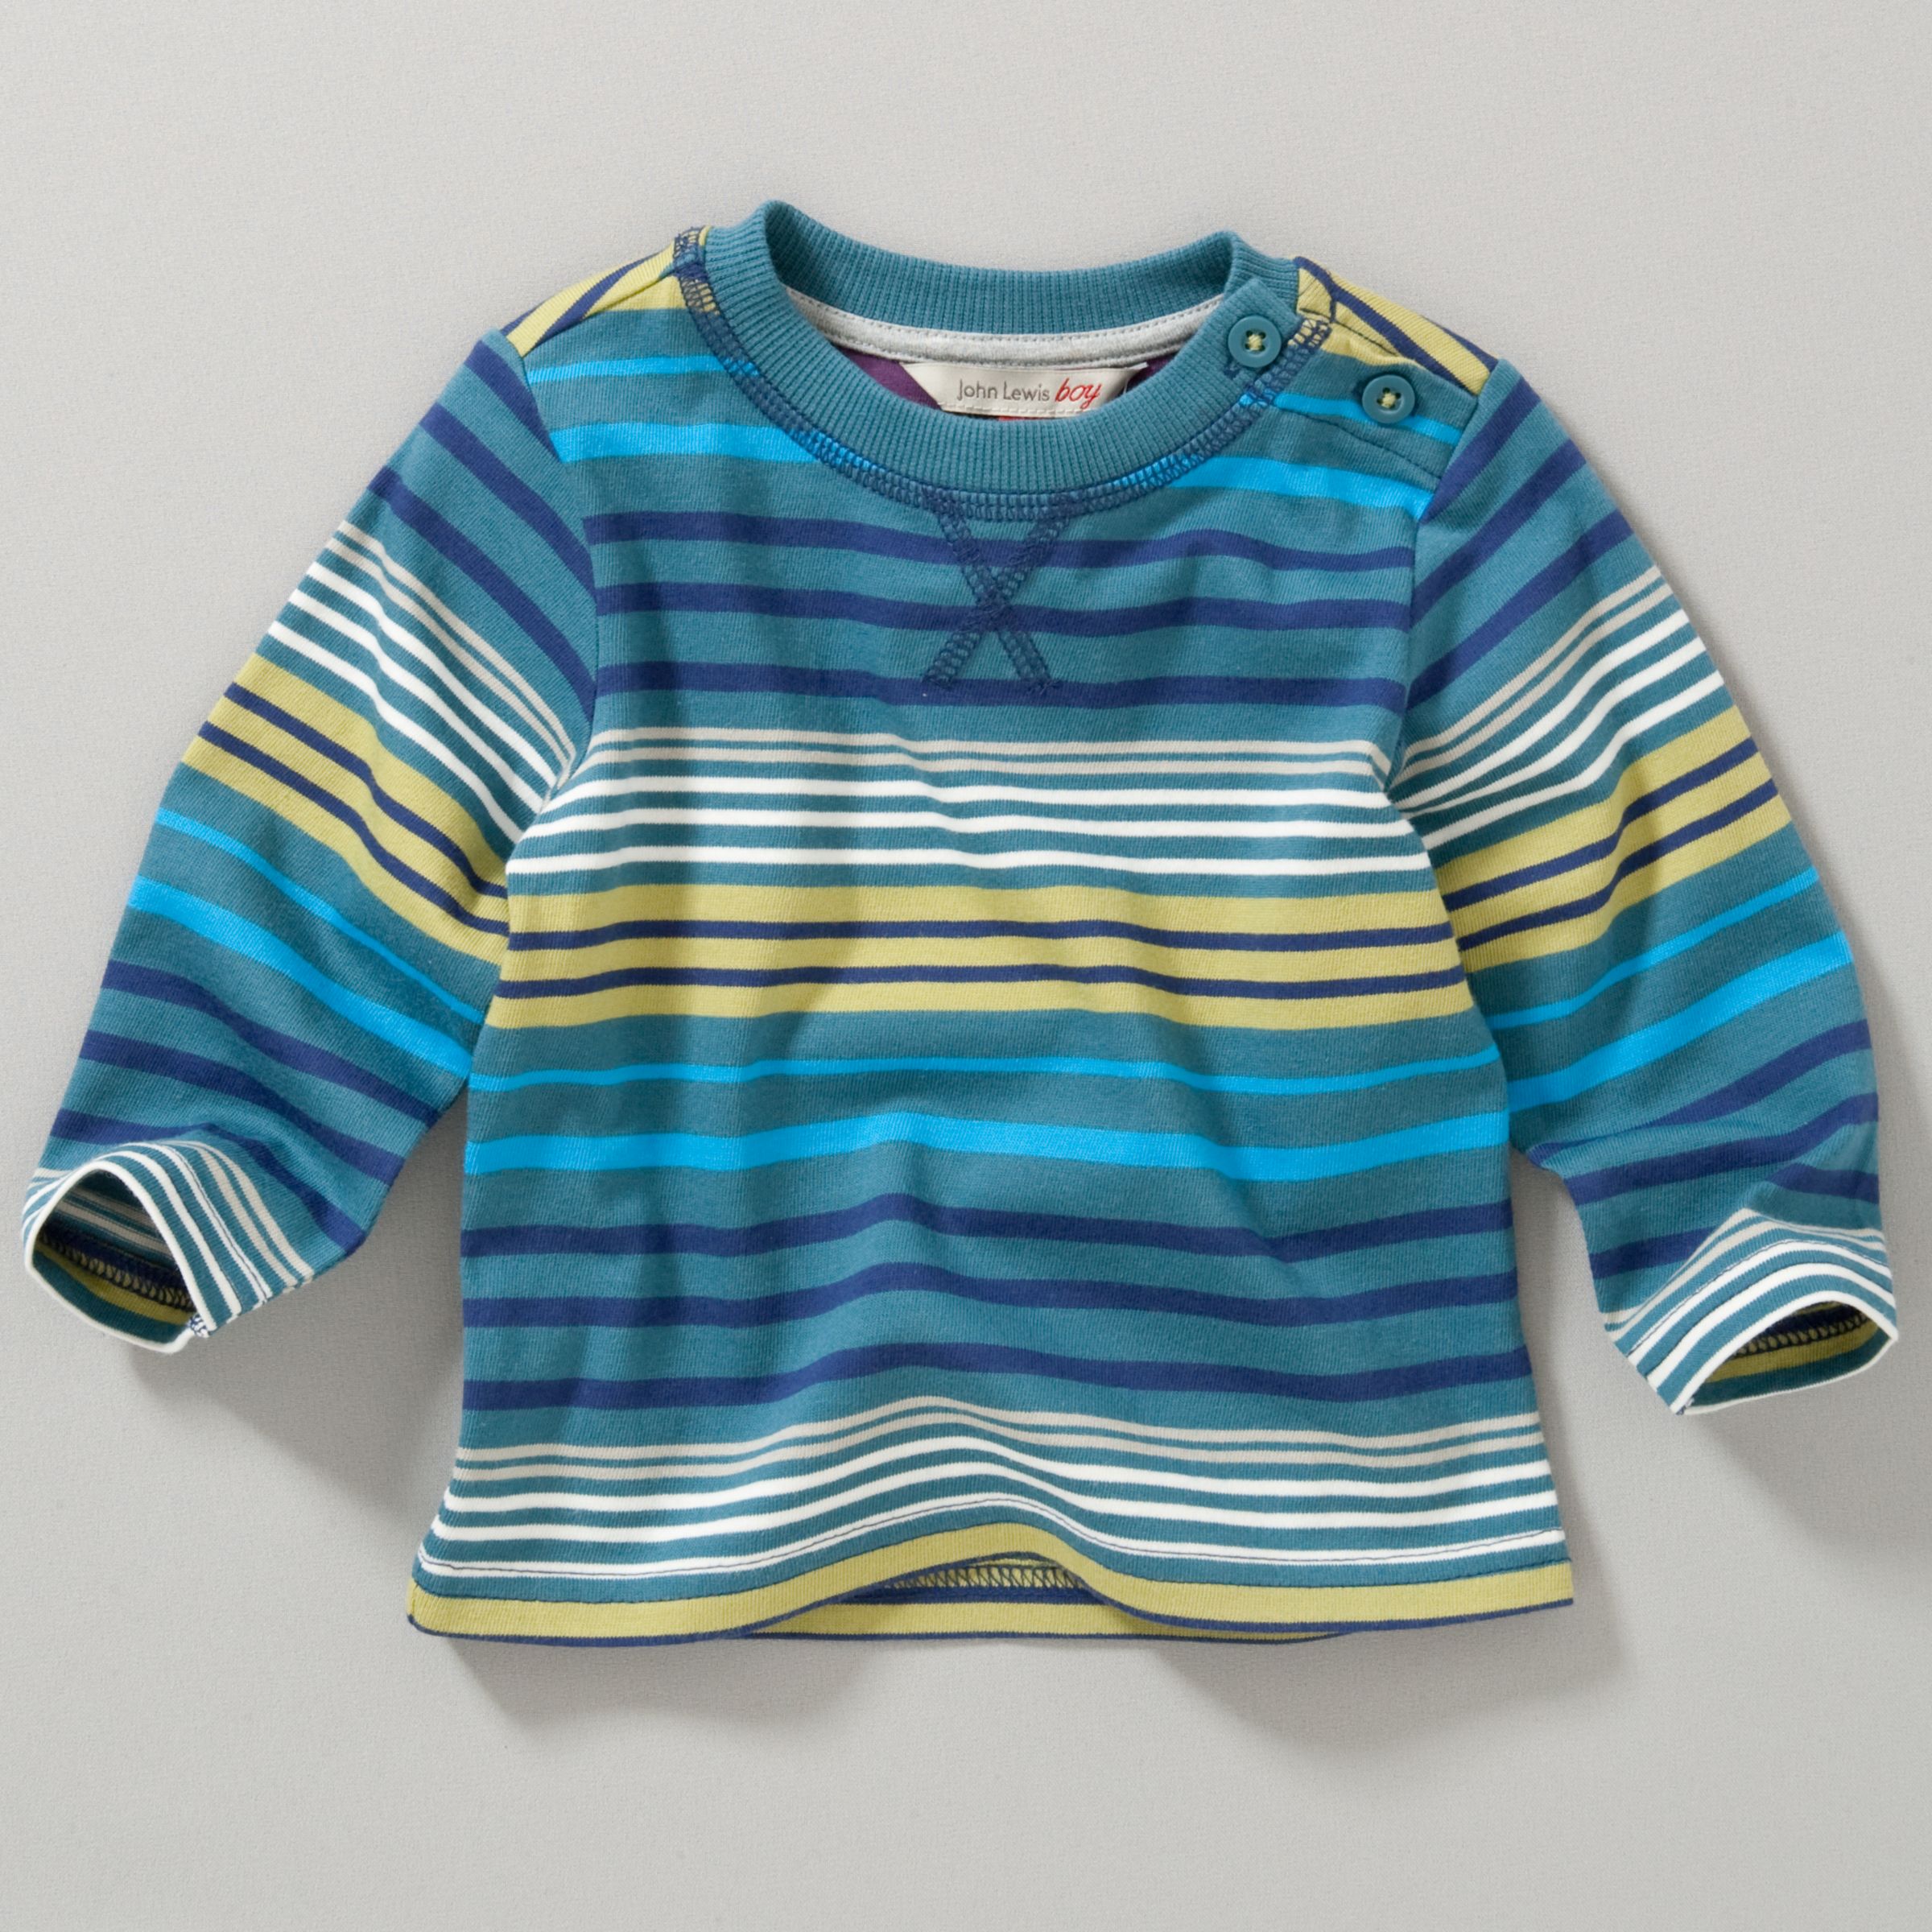 John Lewis Boy Engineered Stripe T-Shirt, Multi